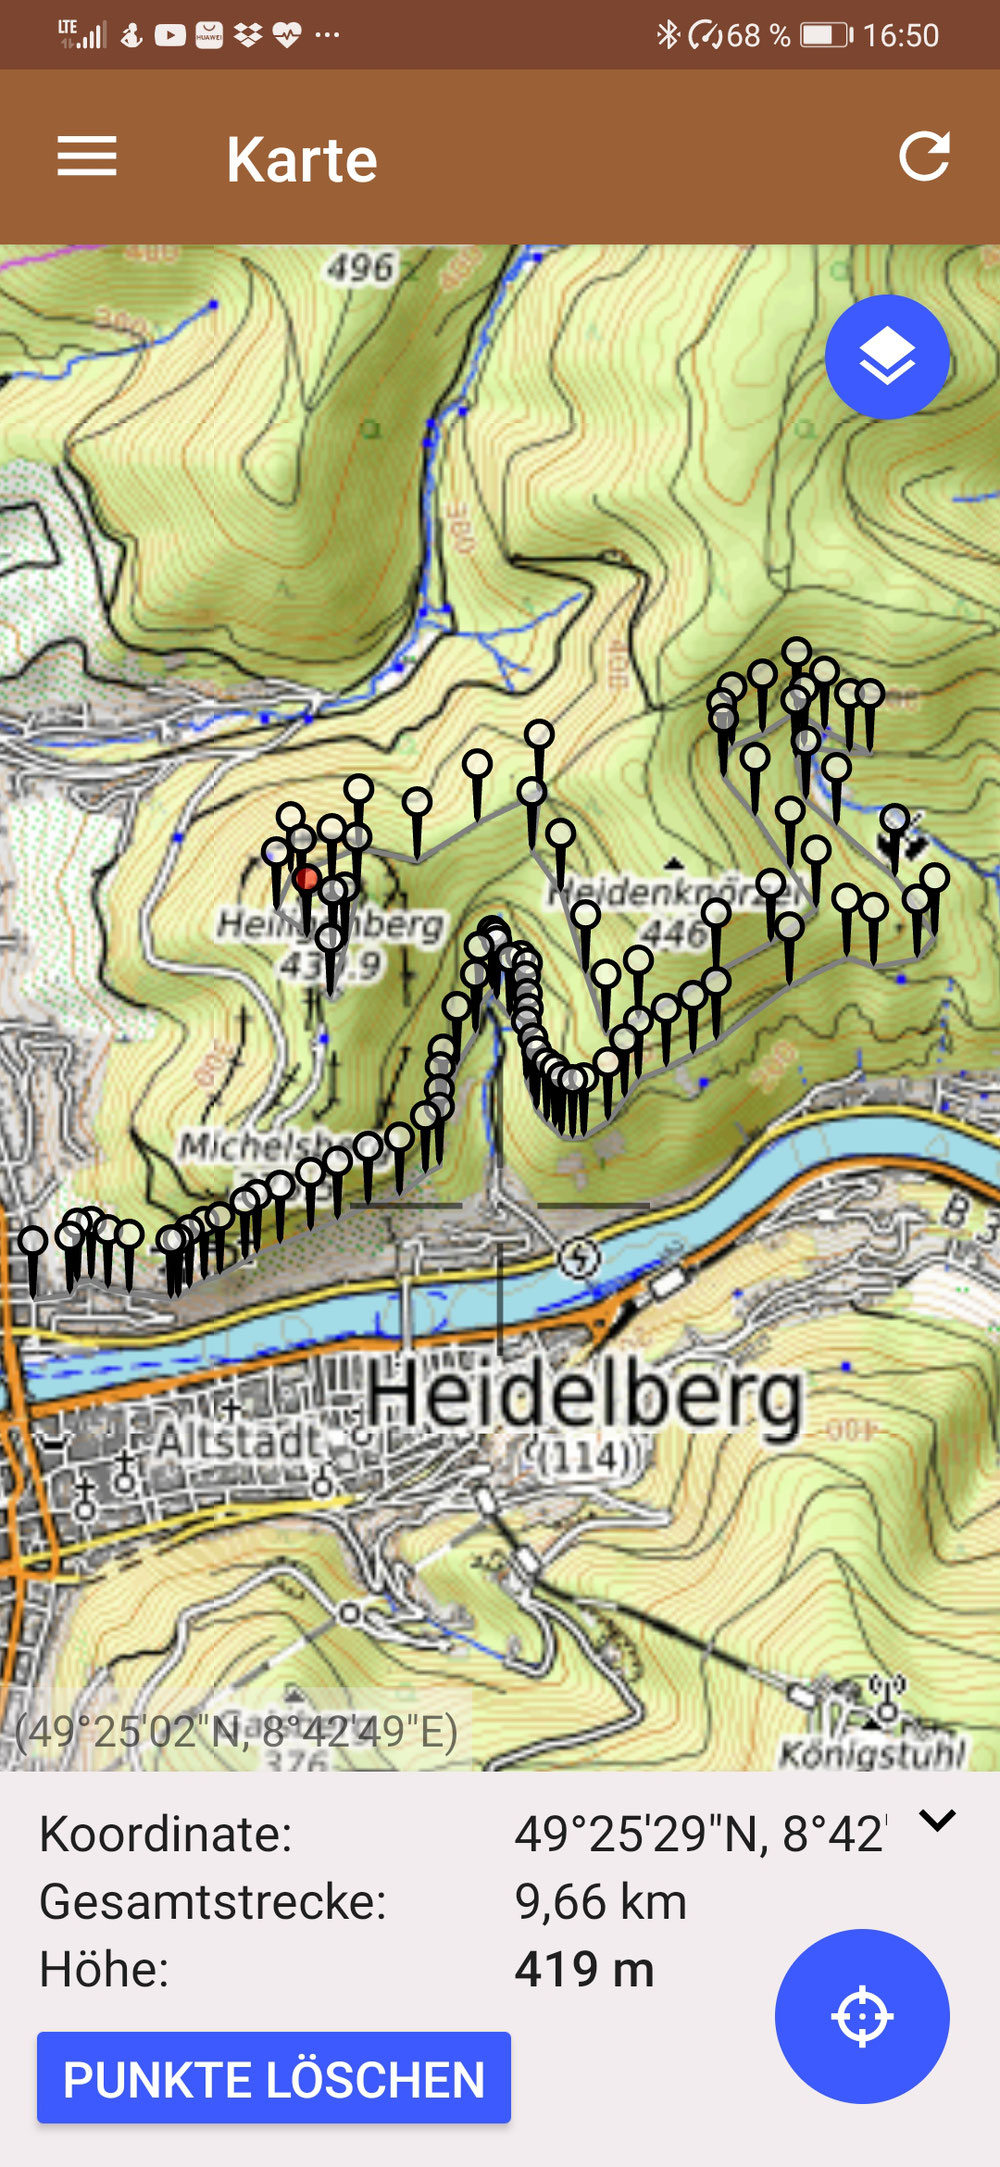 Hoch auf den Heiligenberg über den Philosophenweg 